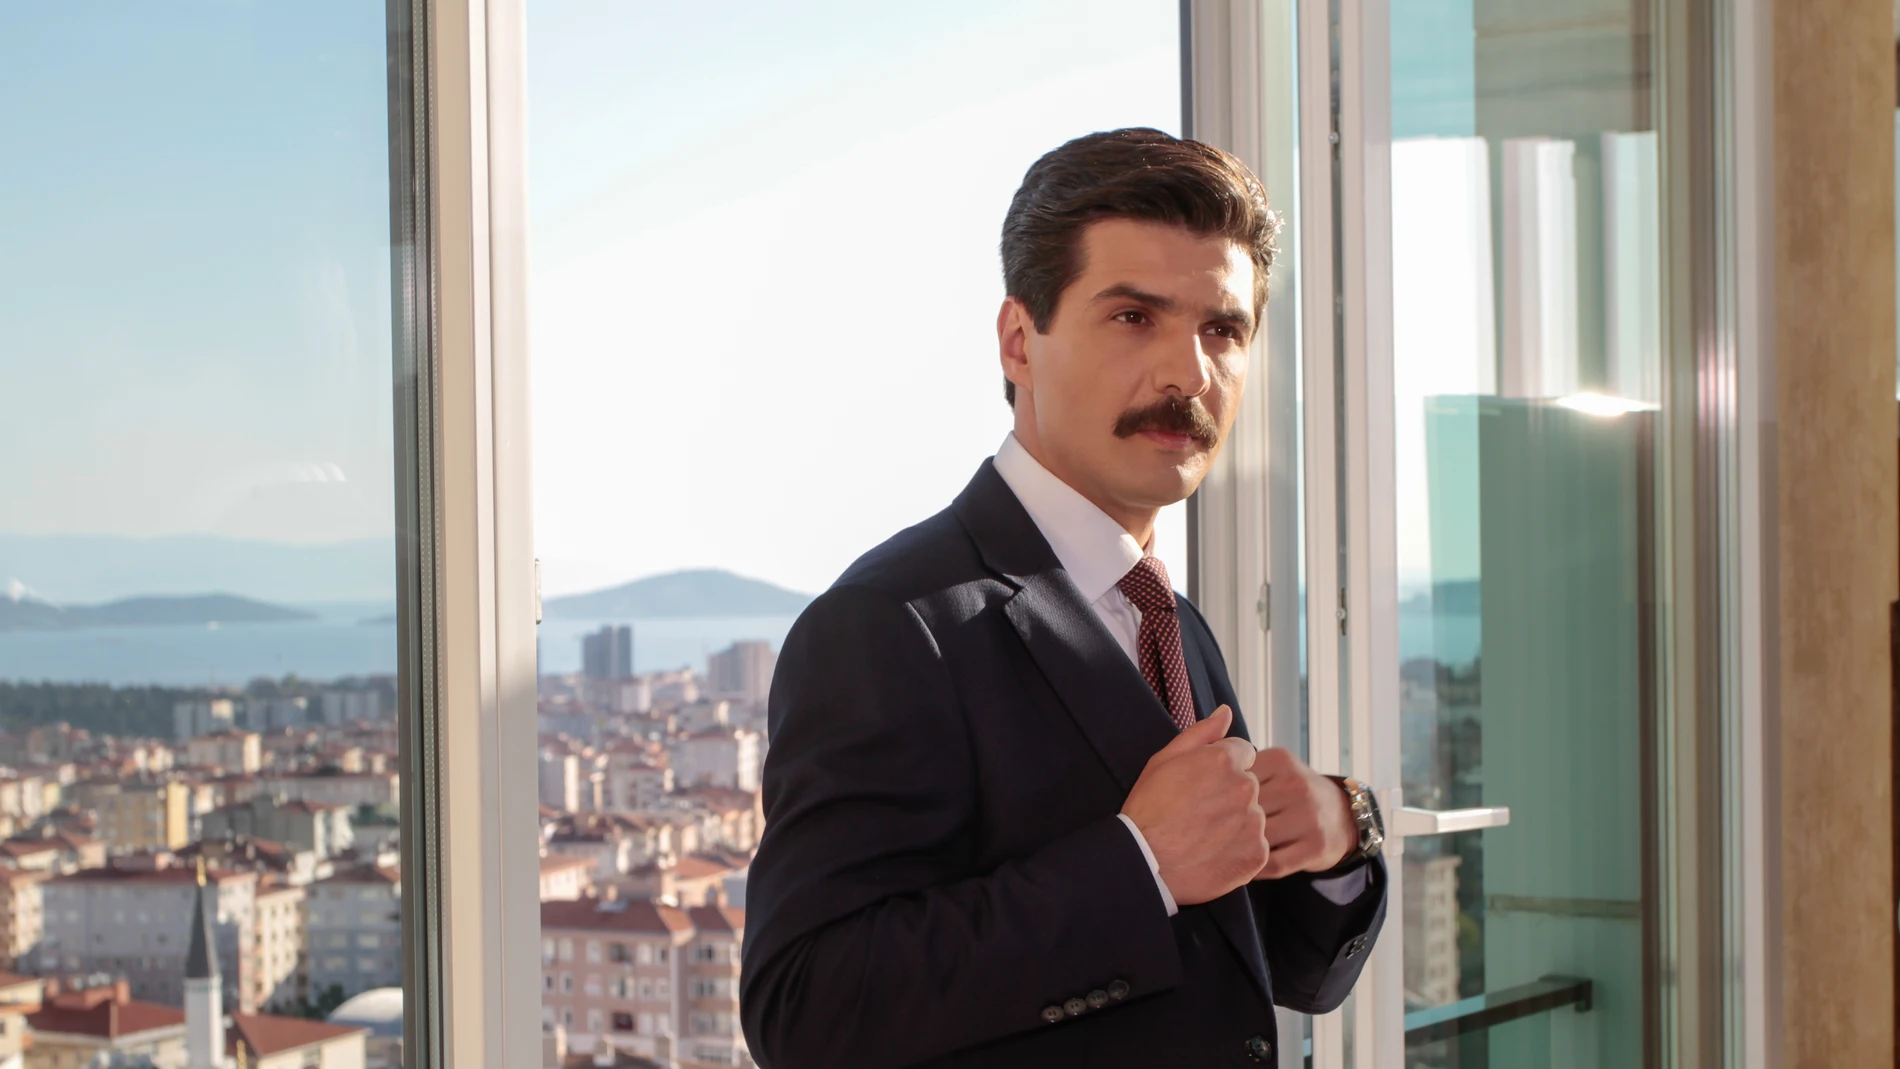 El ambicioso fiscal Cemal Toktas está interpretado por Oktay Sahin